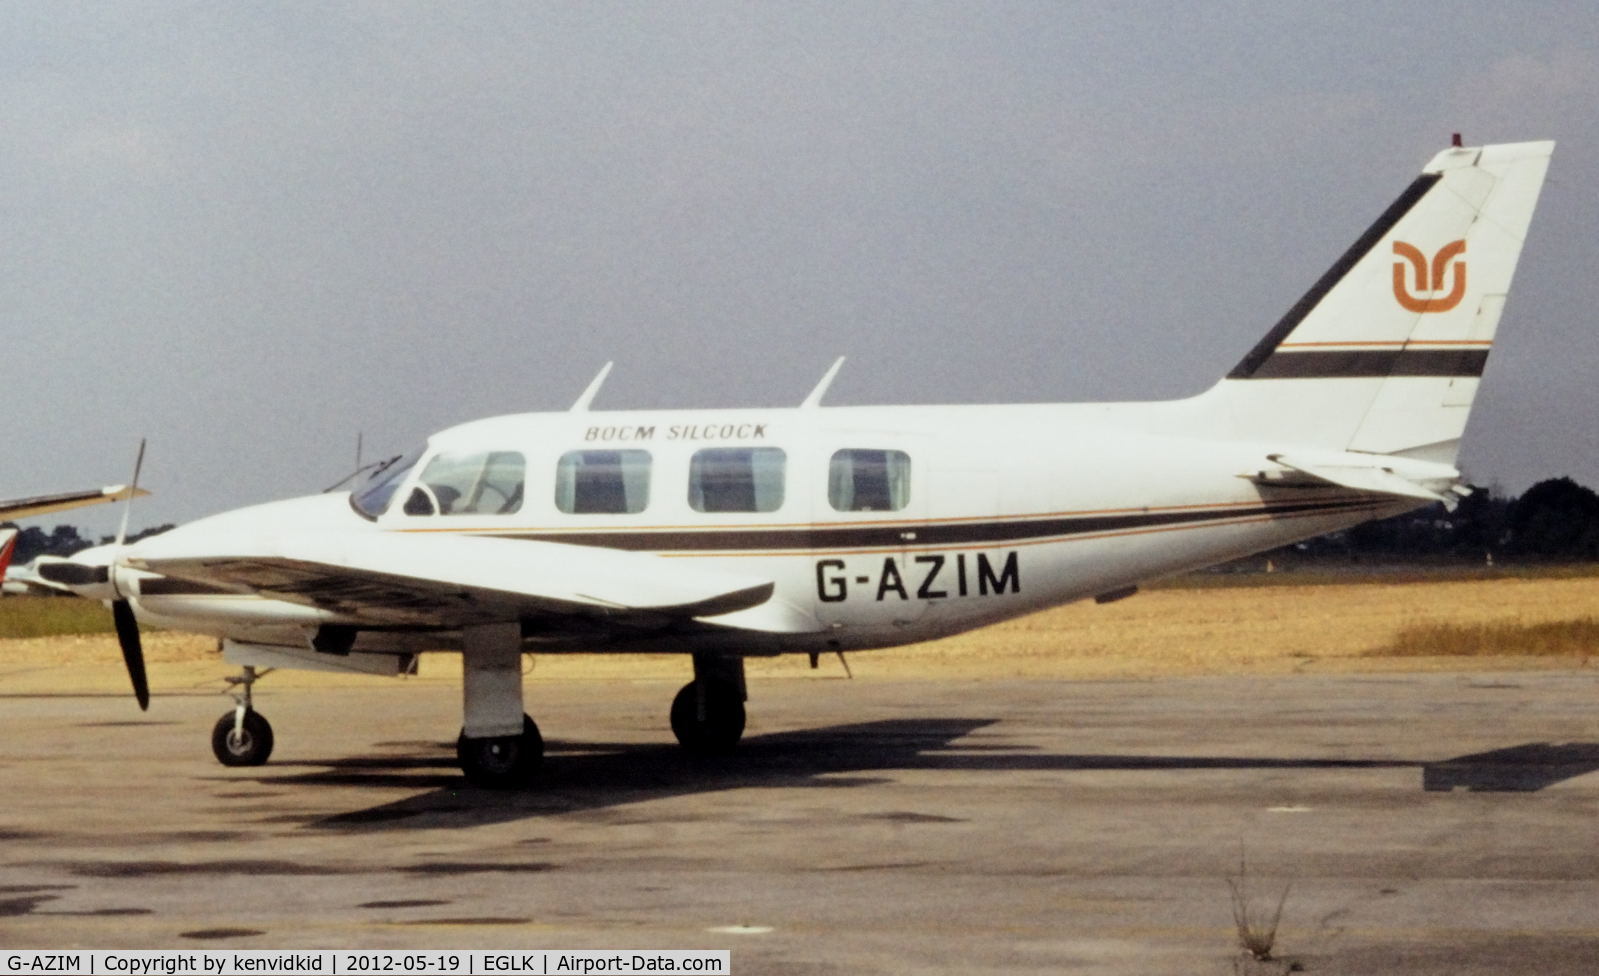 G-AZIM, 1971 Piper PA-31 Navajo C/N 31-776, IDS Aircraft. At Blackbushe.